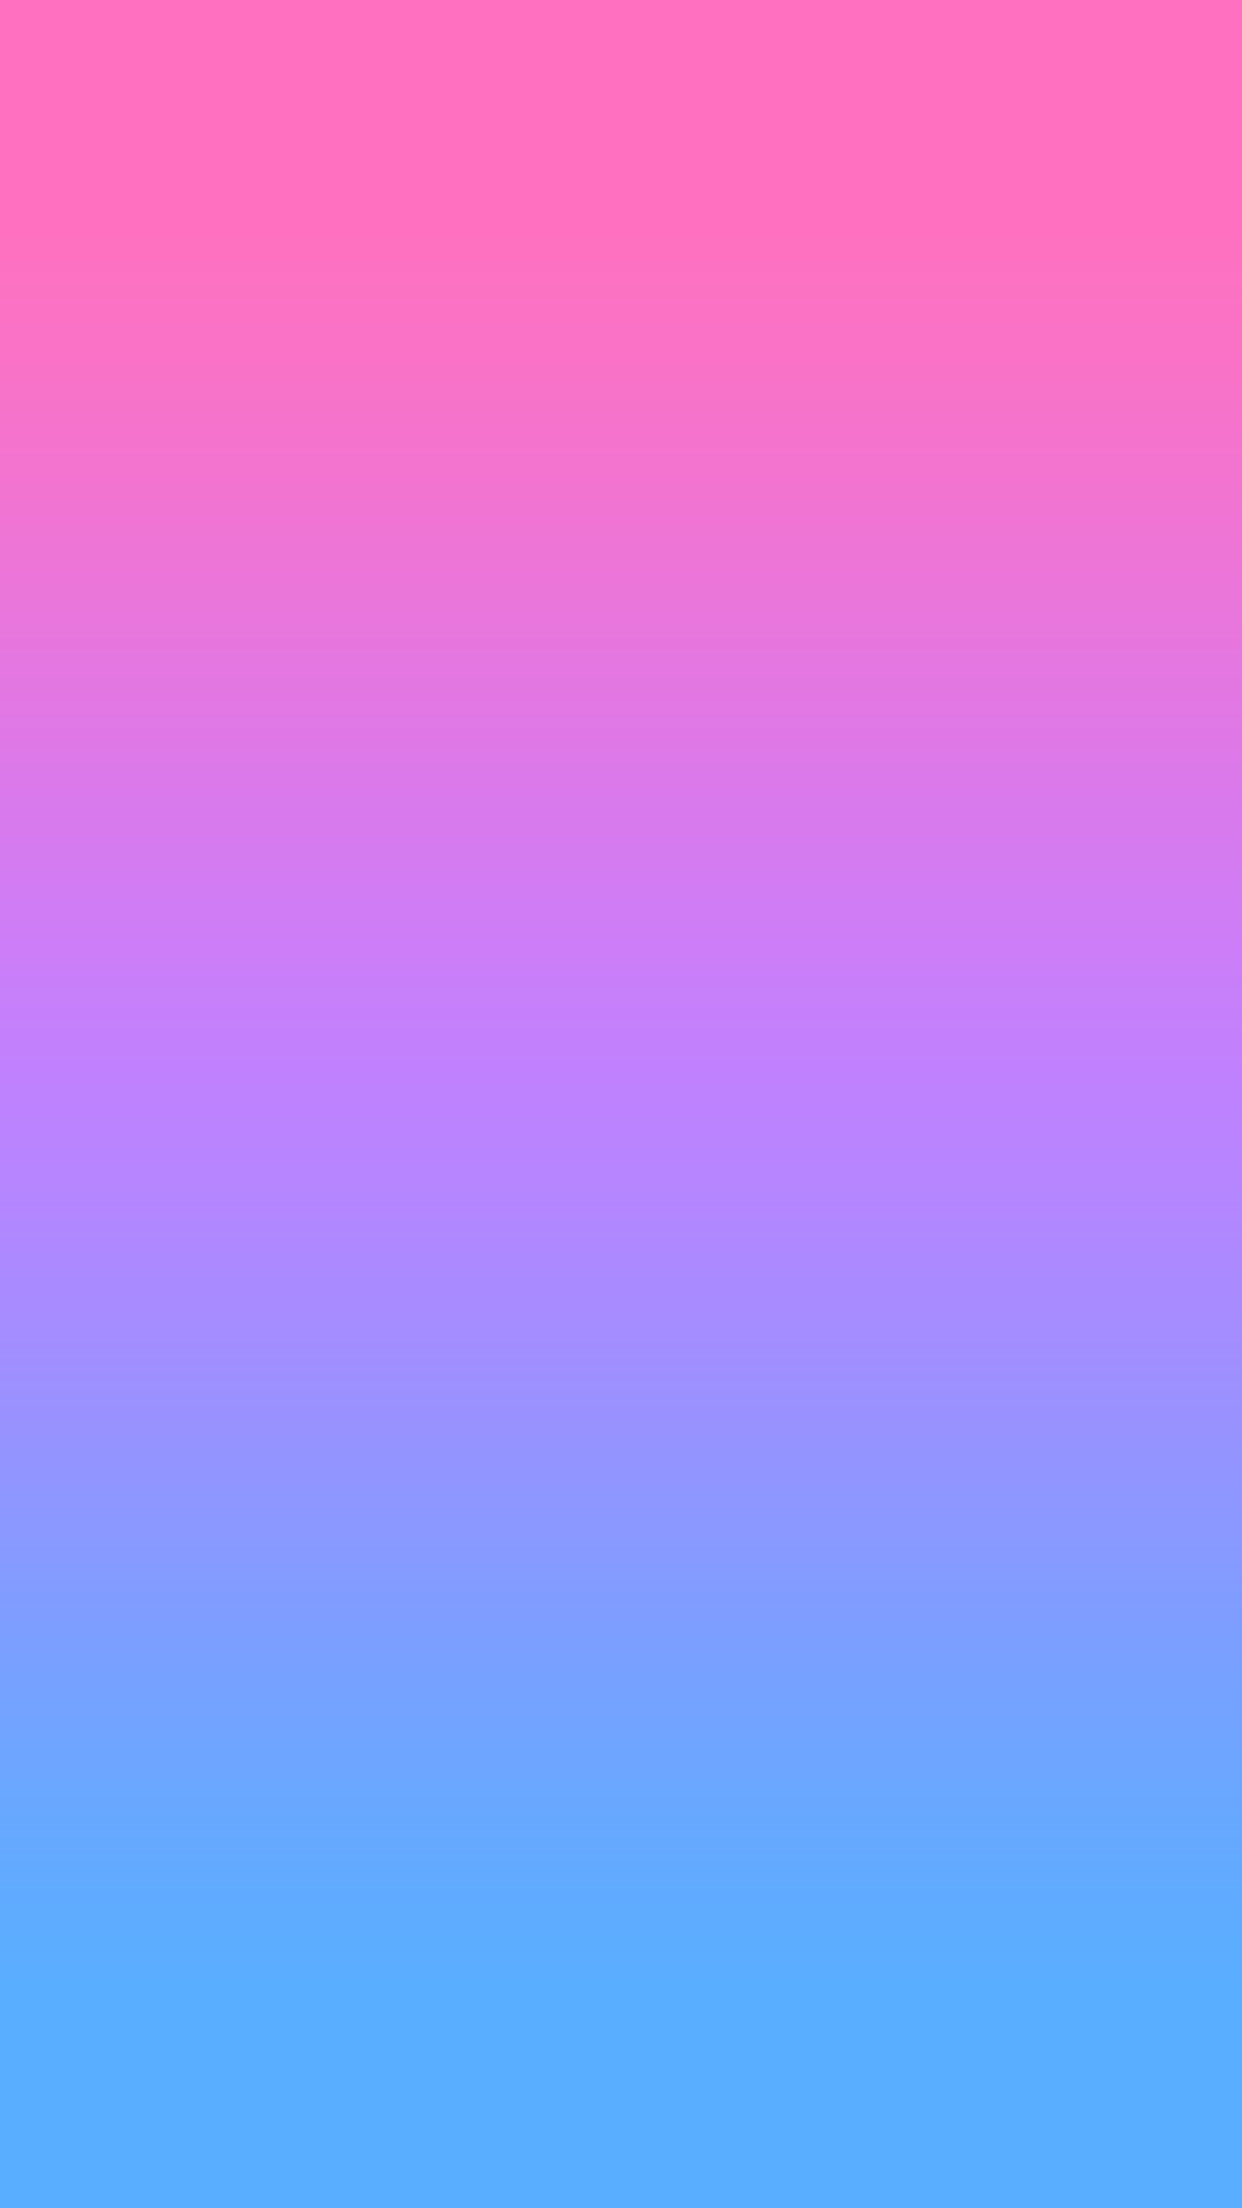 papel pintado púrpura ombre,azul,violeta,púrpura,rosado,lila